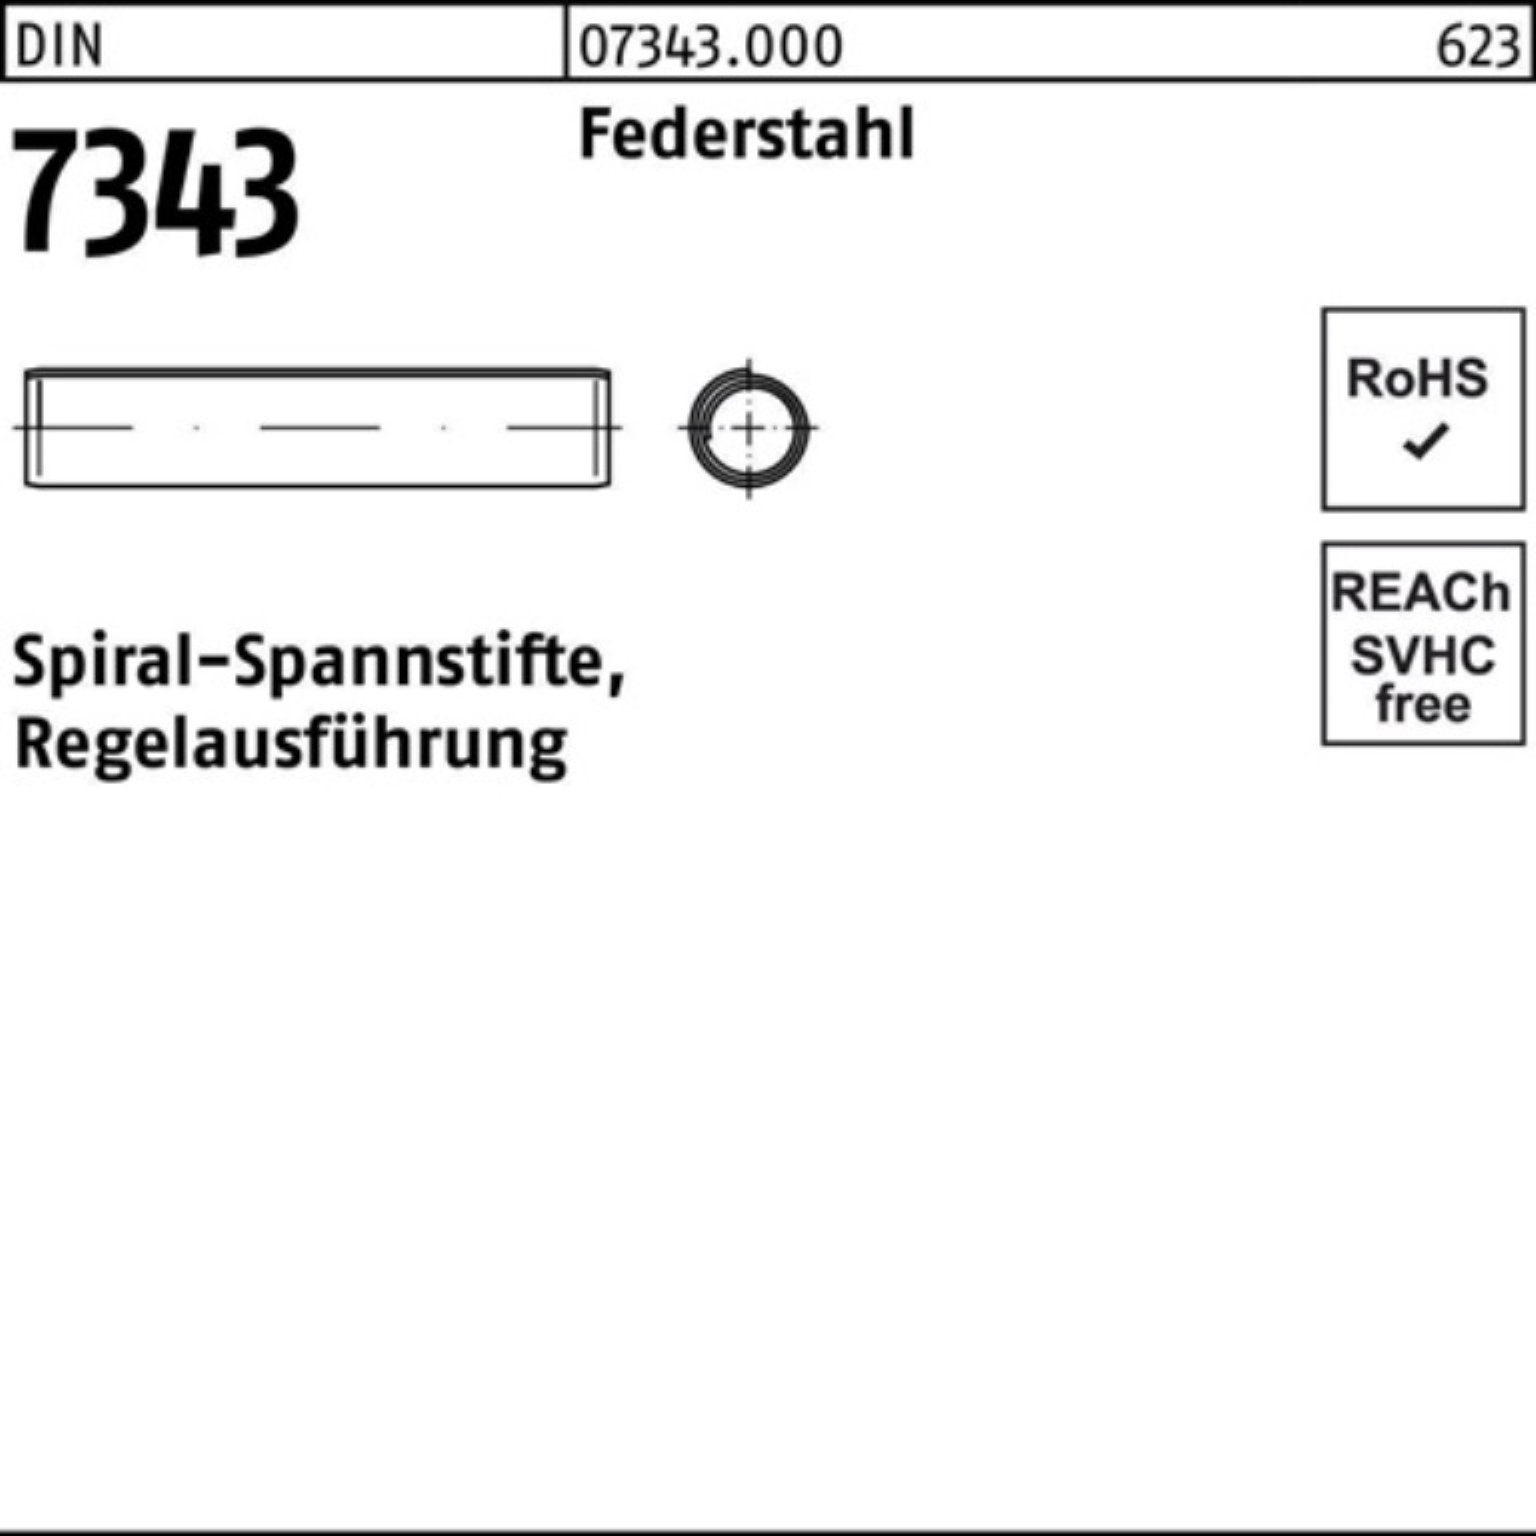 Spiralspannstift 16 Regela Reyher Spannstift Federstahl Pack DIN 1000er 2x 8750 7343/ISO